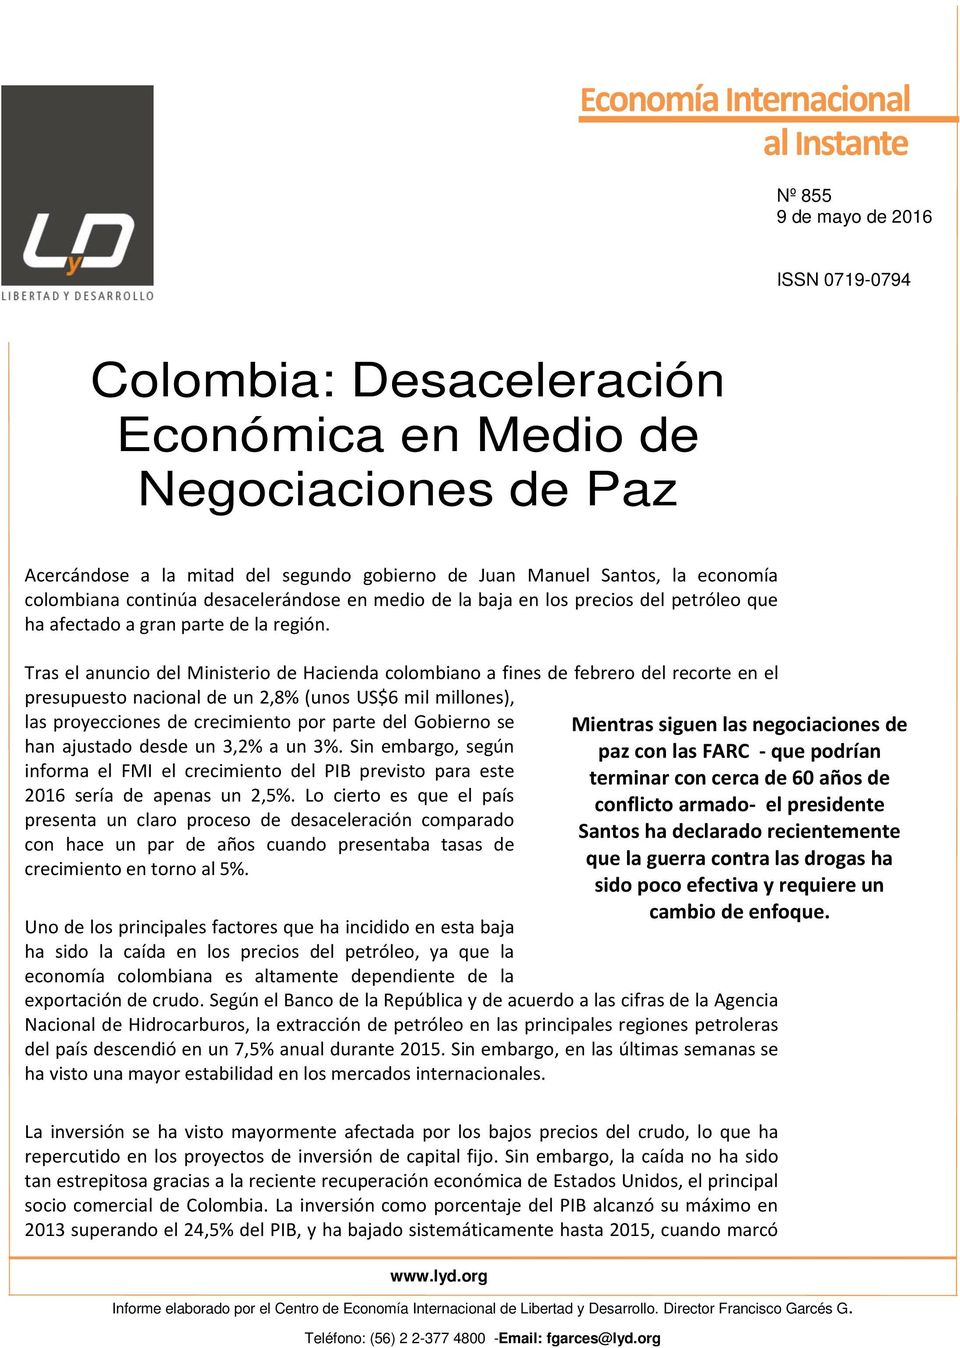 Tras el anuncio del Ministerio de Hacienda colombiano a fines de febrero del recorte en el presupuesto nacional de un 2,8% (unos US$6 mil millones), las proyecciones de crecimiento por parte del